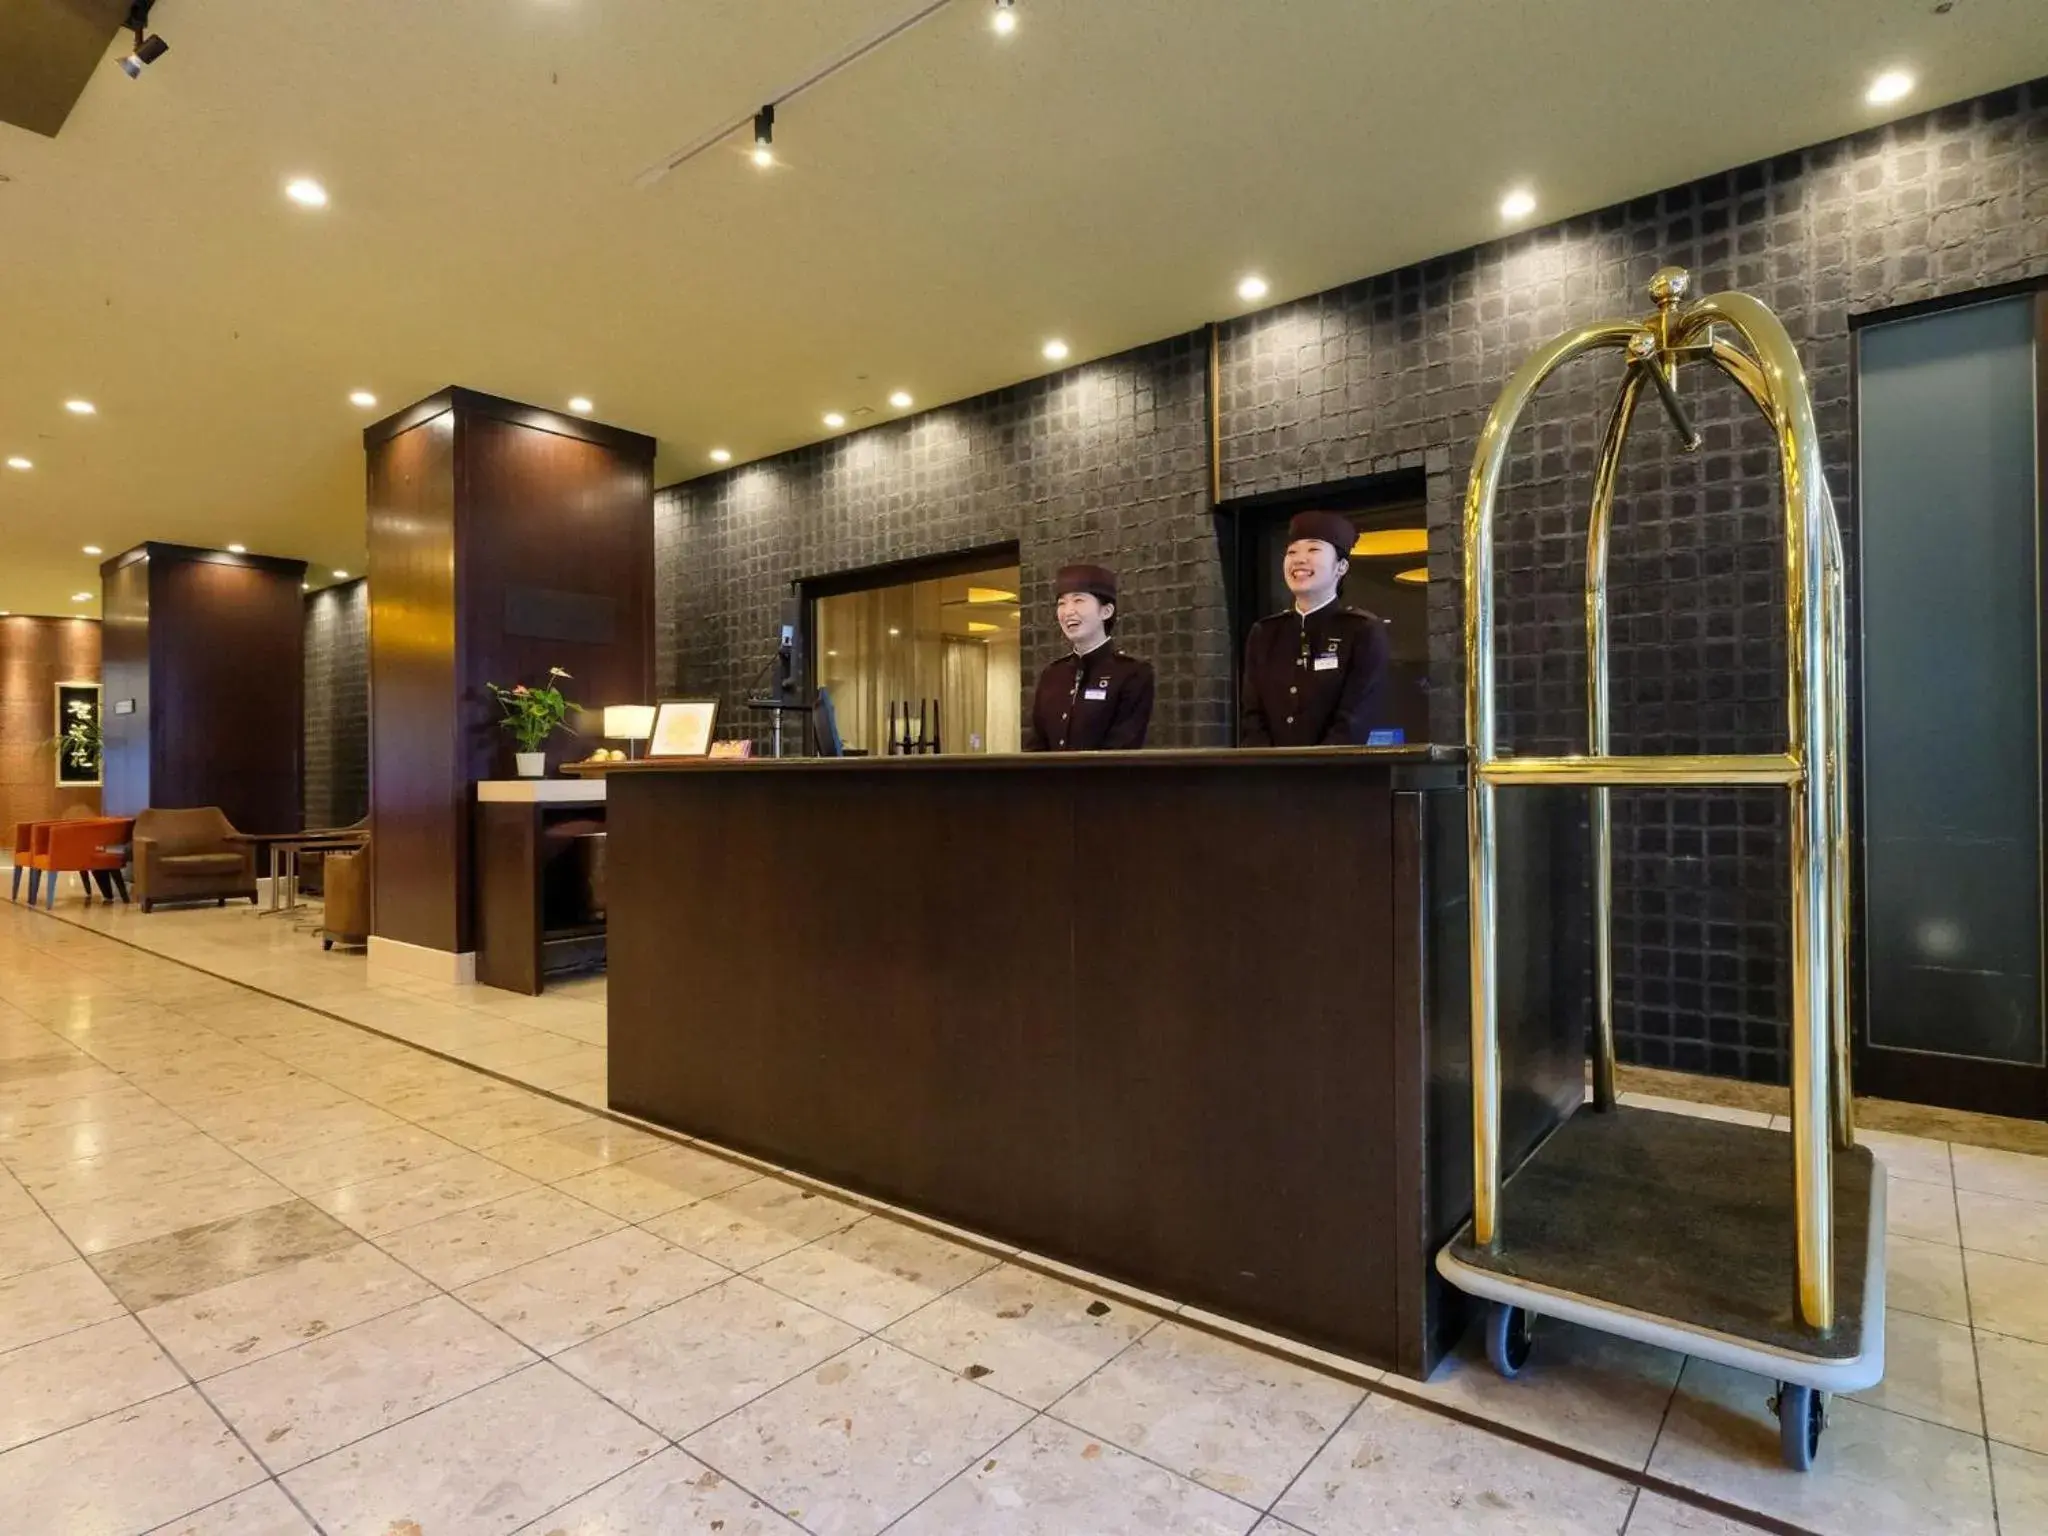 Lobby or reception in Hotel Buena Vista